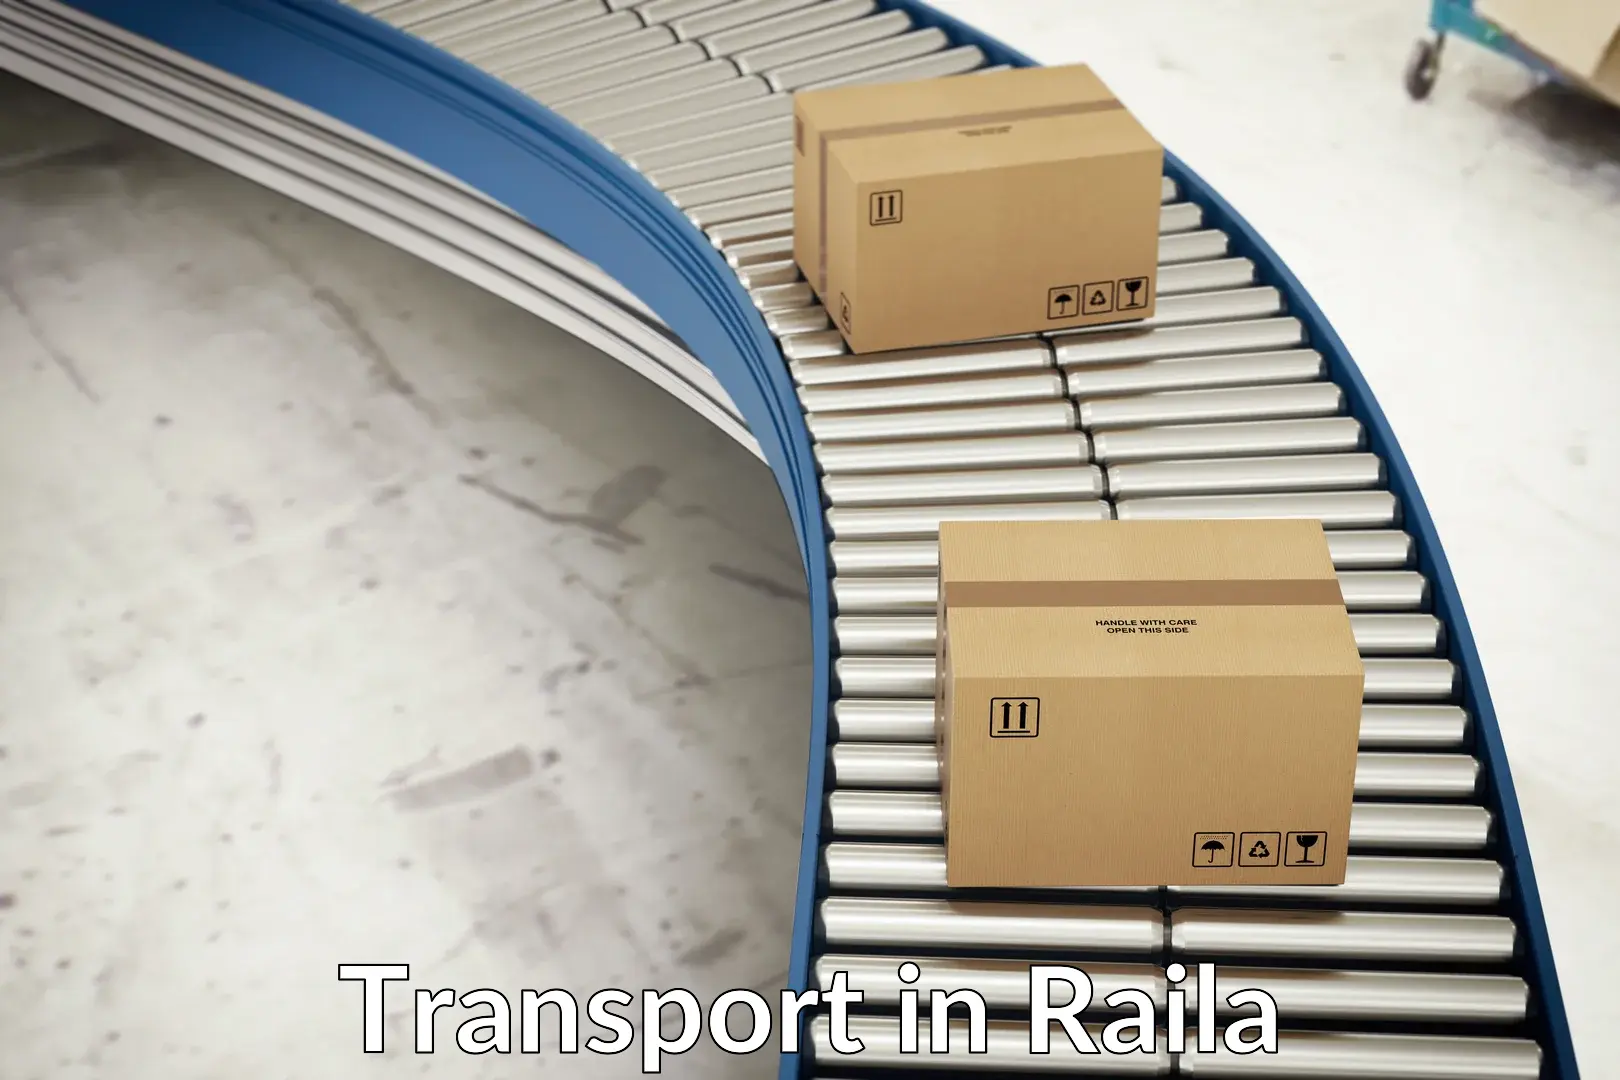 Cargo train transport services in Raila